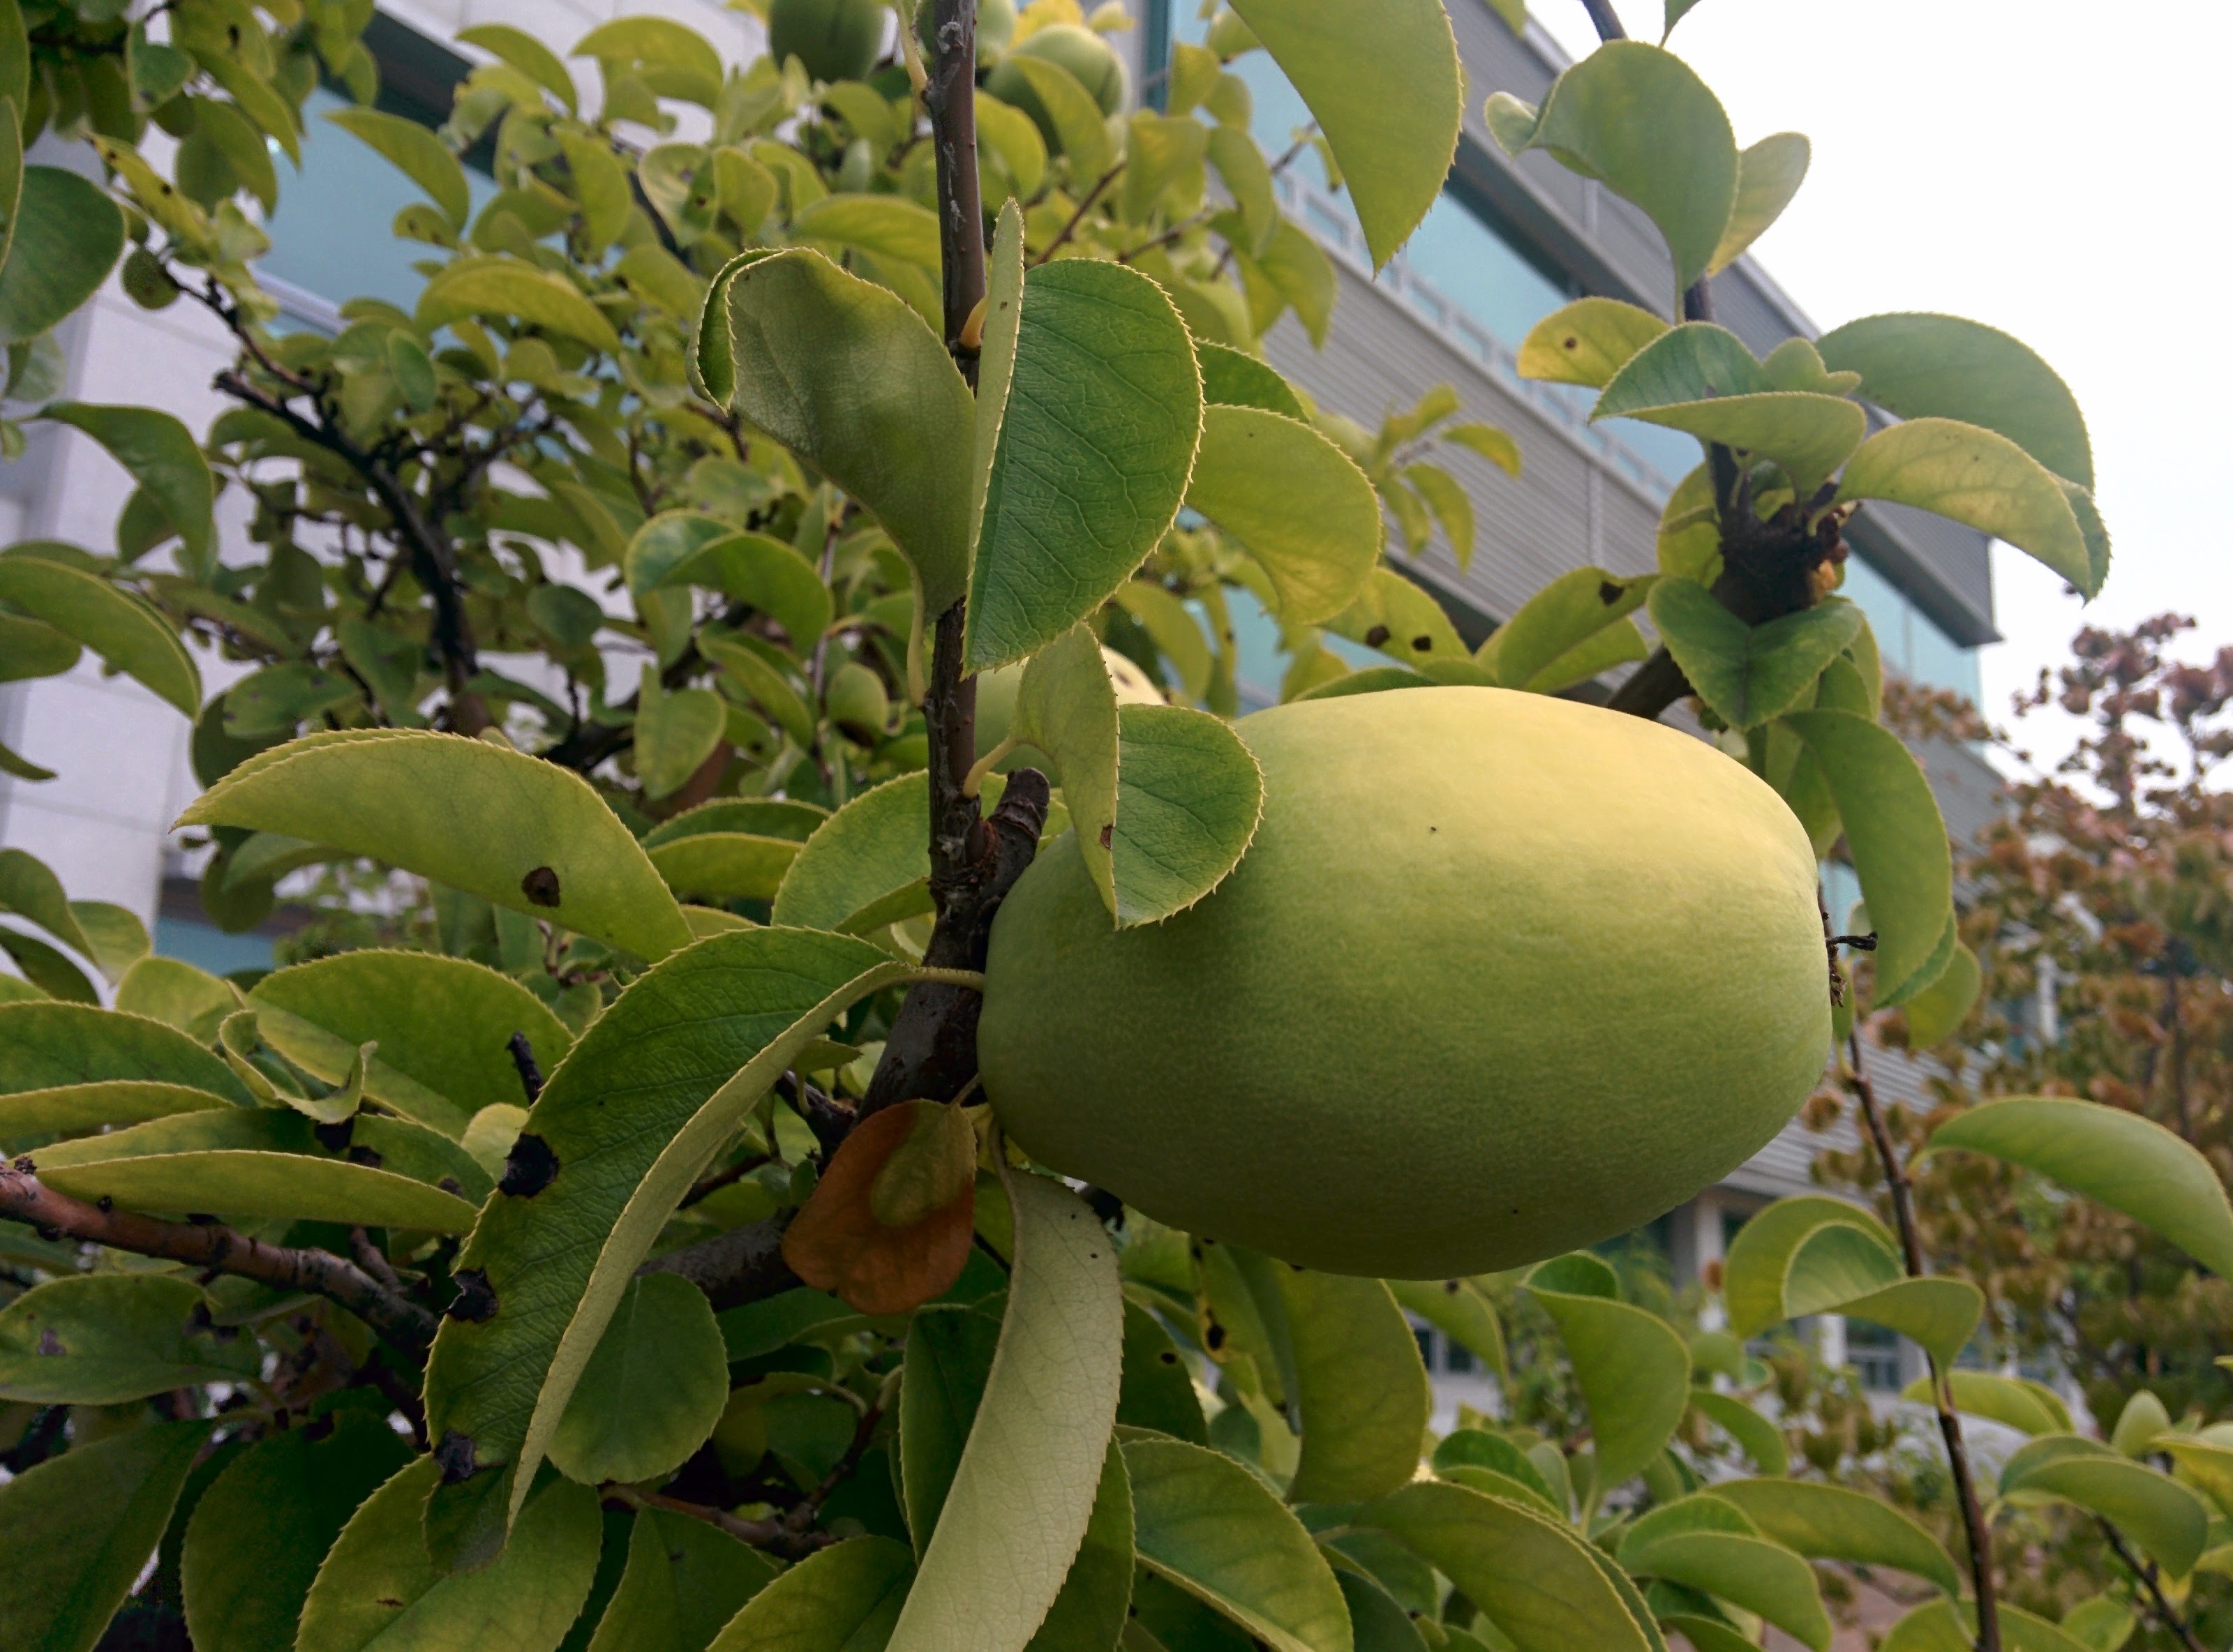 IMG_20150916_164923.jpg 과학기술연합대학원대학교 모과나무에 모과열매가 주렁주렁